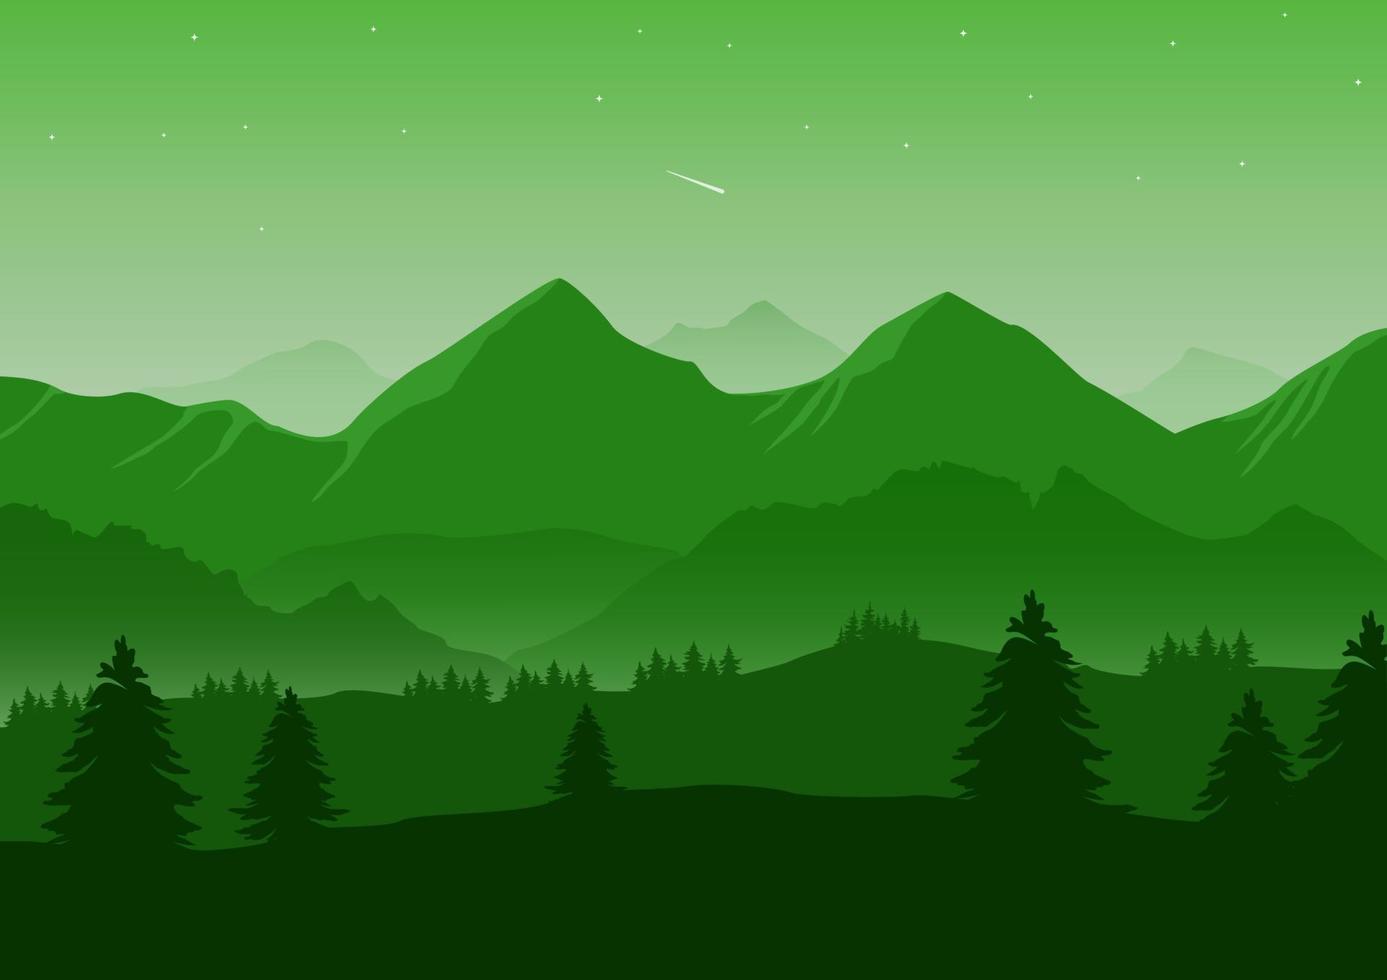 realistisk bergen landskap vektor illustration. tall träd och berg grön silhuetter för de bakgrund.